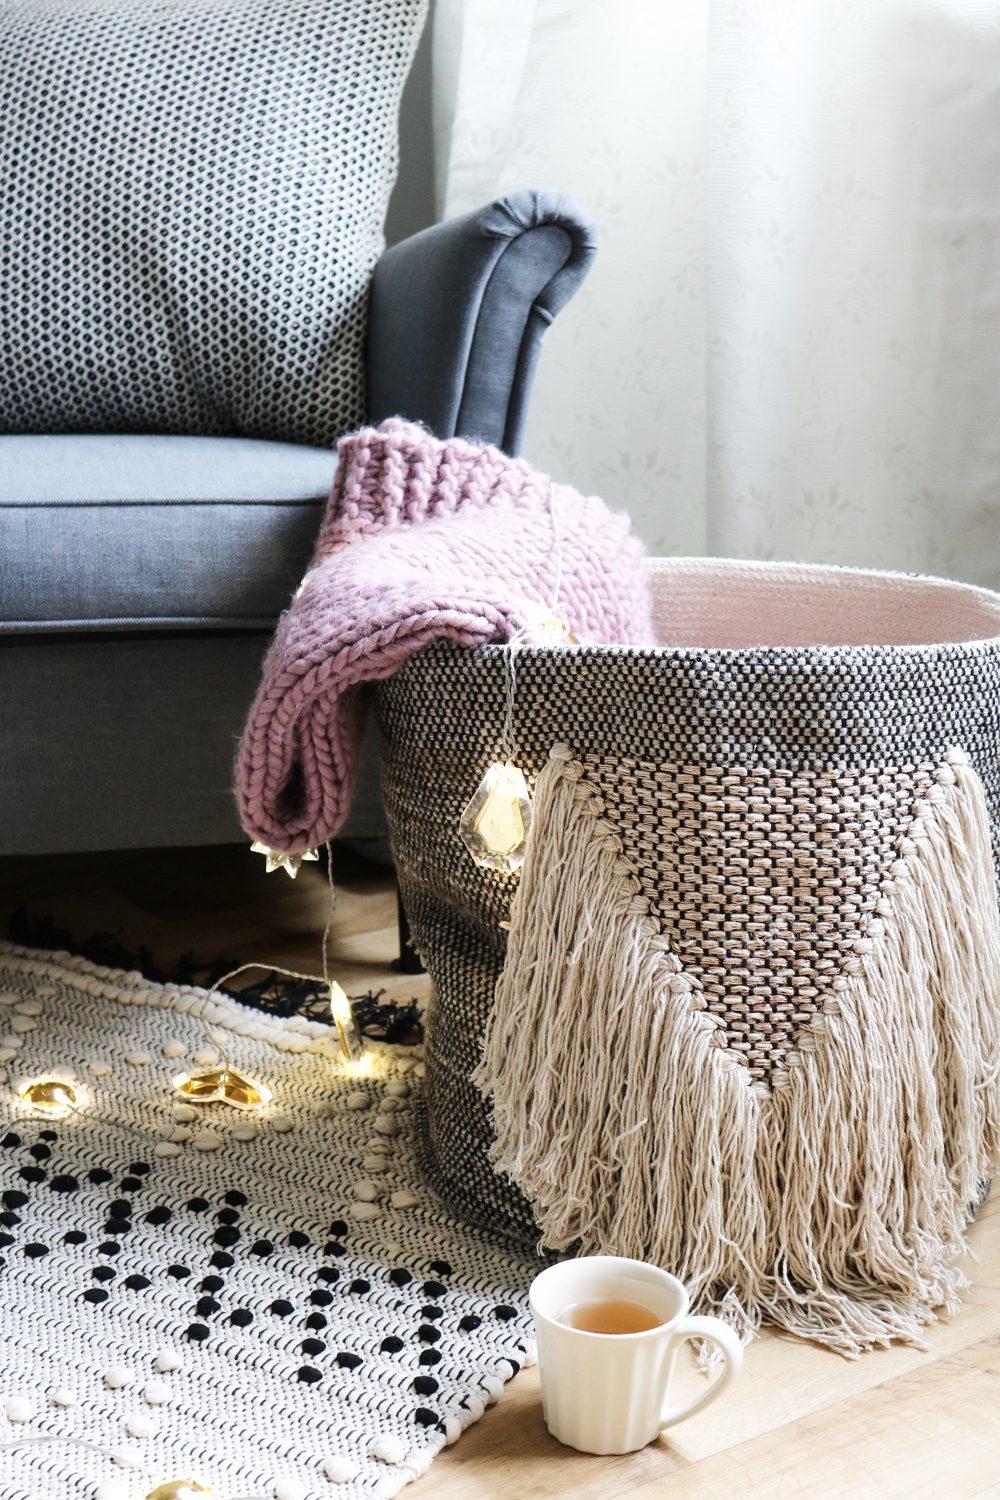 Mit einem warmen #Tee und einem gemütlichen #Sessel lässt es sich doch gleich viel besser entspannen.☕️
#couchliebt 